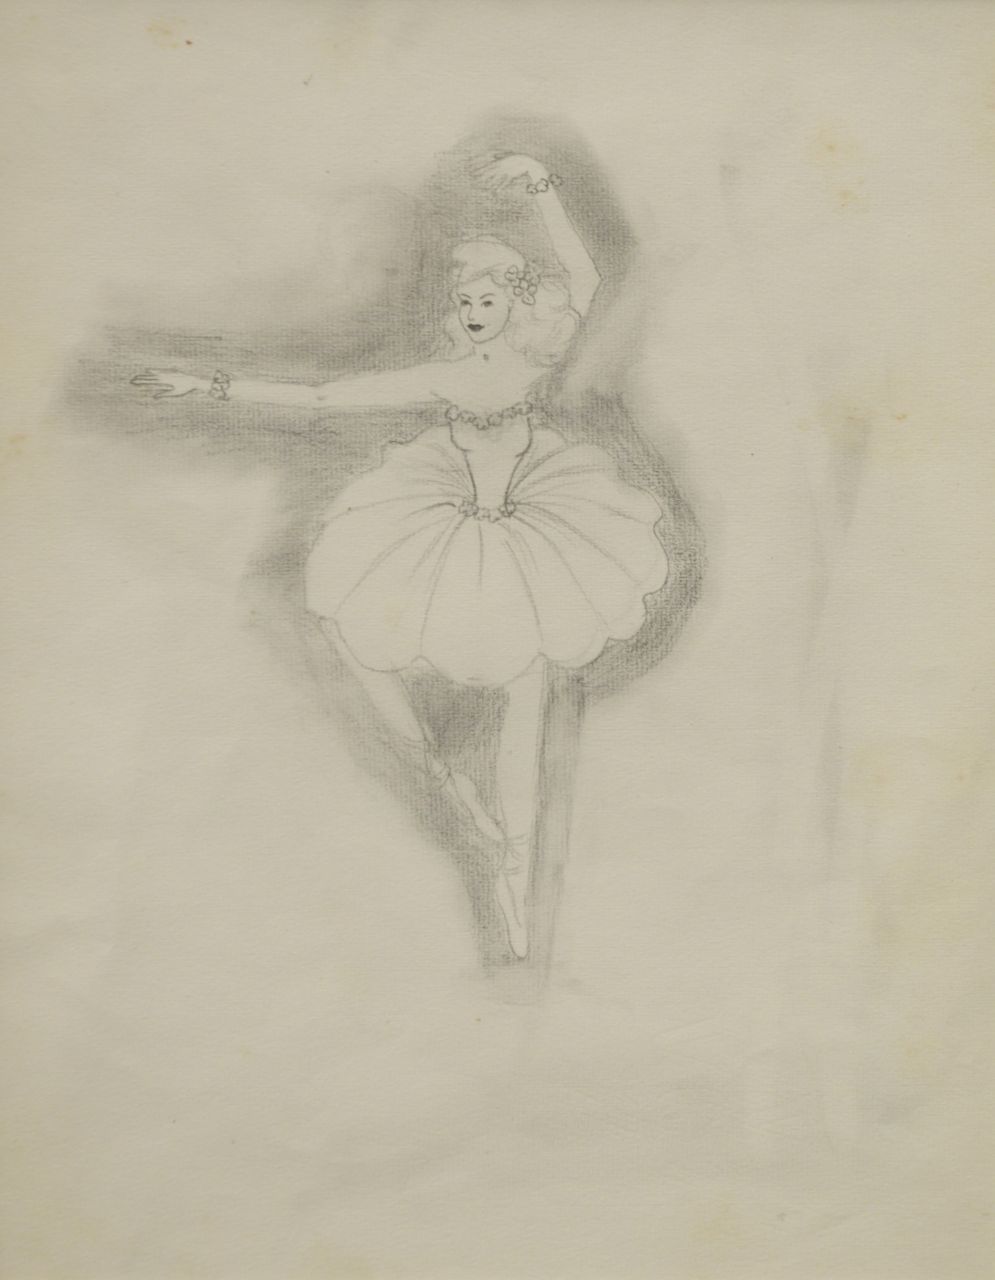 Oranje-Nassau (Prinses Beatrix) B.W.A. van | Beatrix Wilhelmina Armgard van Oranje-Nassau (Prinses Beatrix), Ballet dancer, Bleistift auf Papier 30,0 x 23,0 cm